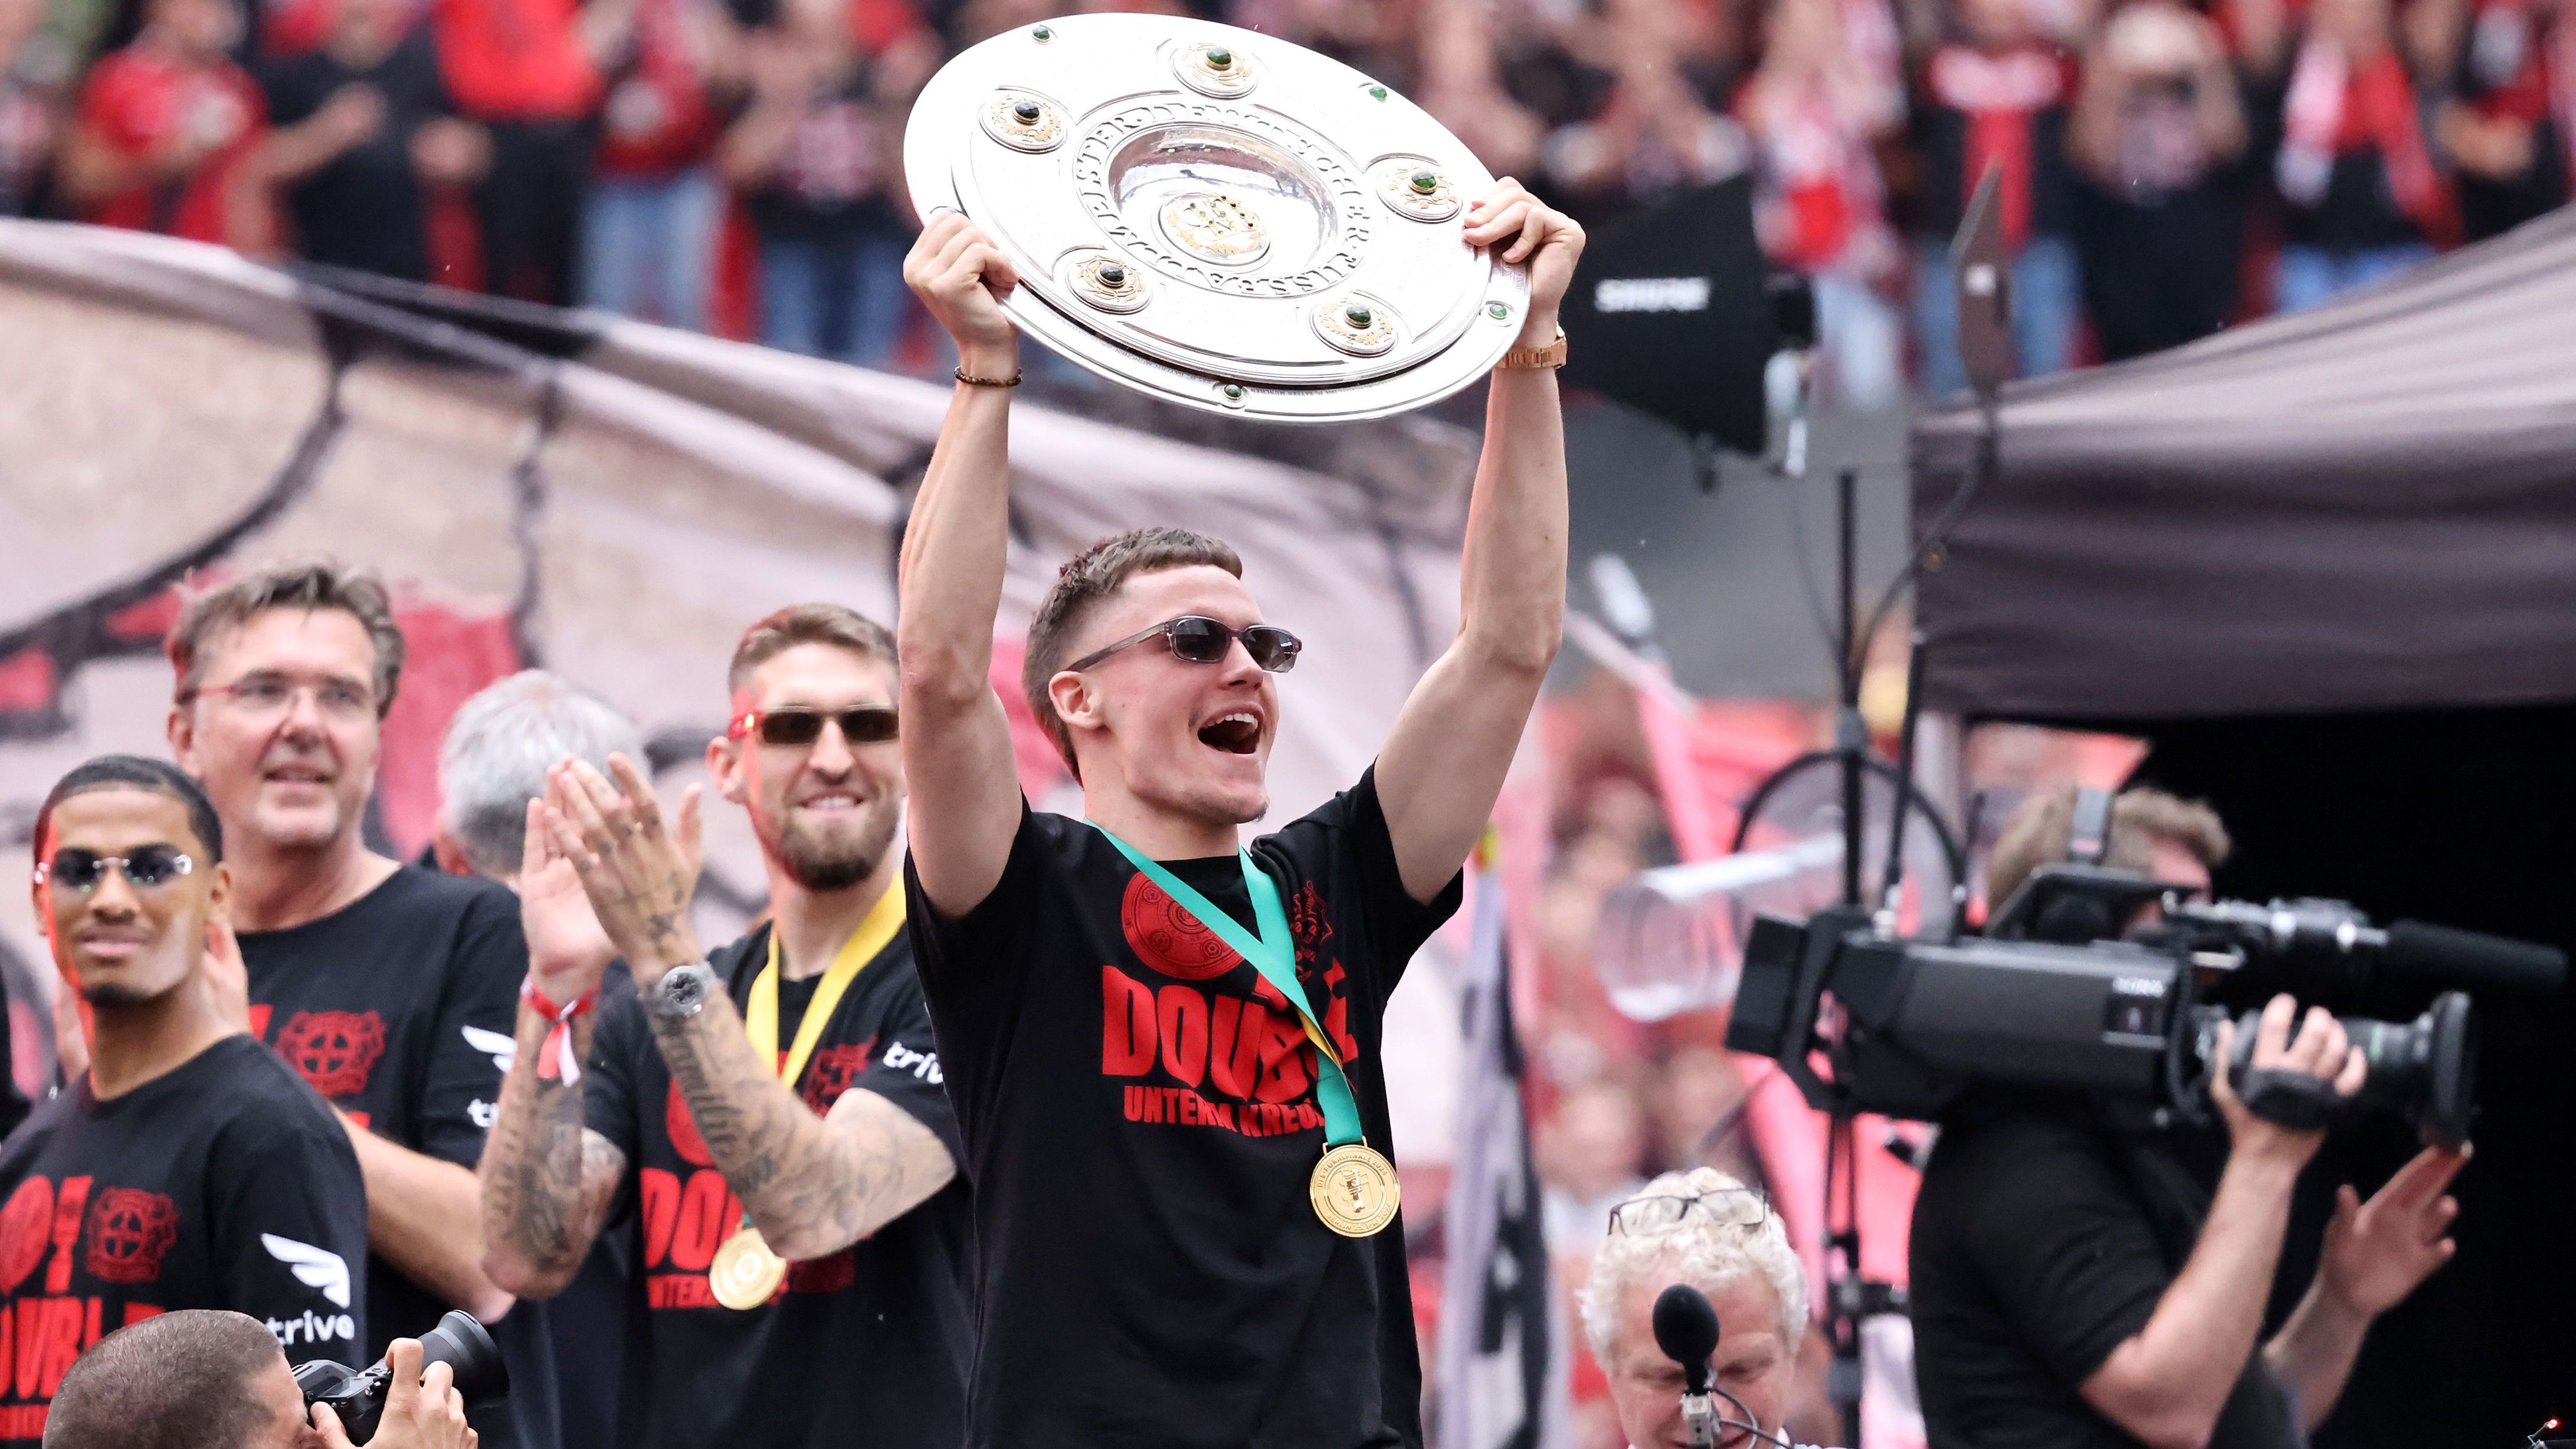 <strong>Bayer Leverkusen feiert den Double-Gewinn</strong><br>Die Sonnenbrille deutete darauf hin, dass die Nacht nach dem gewonnenen Pokal-Finale ziemlich kurz ausfiel. Mit seinen 21 Jahren scheint Florian Wirtz aber noch ausreichend Party-Ausdauer im Tank zu haben.&nbsp;